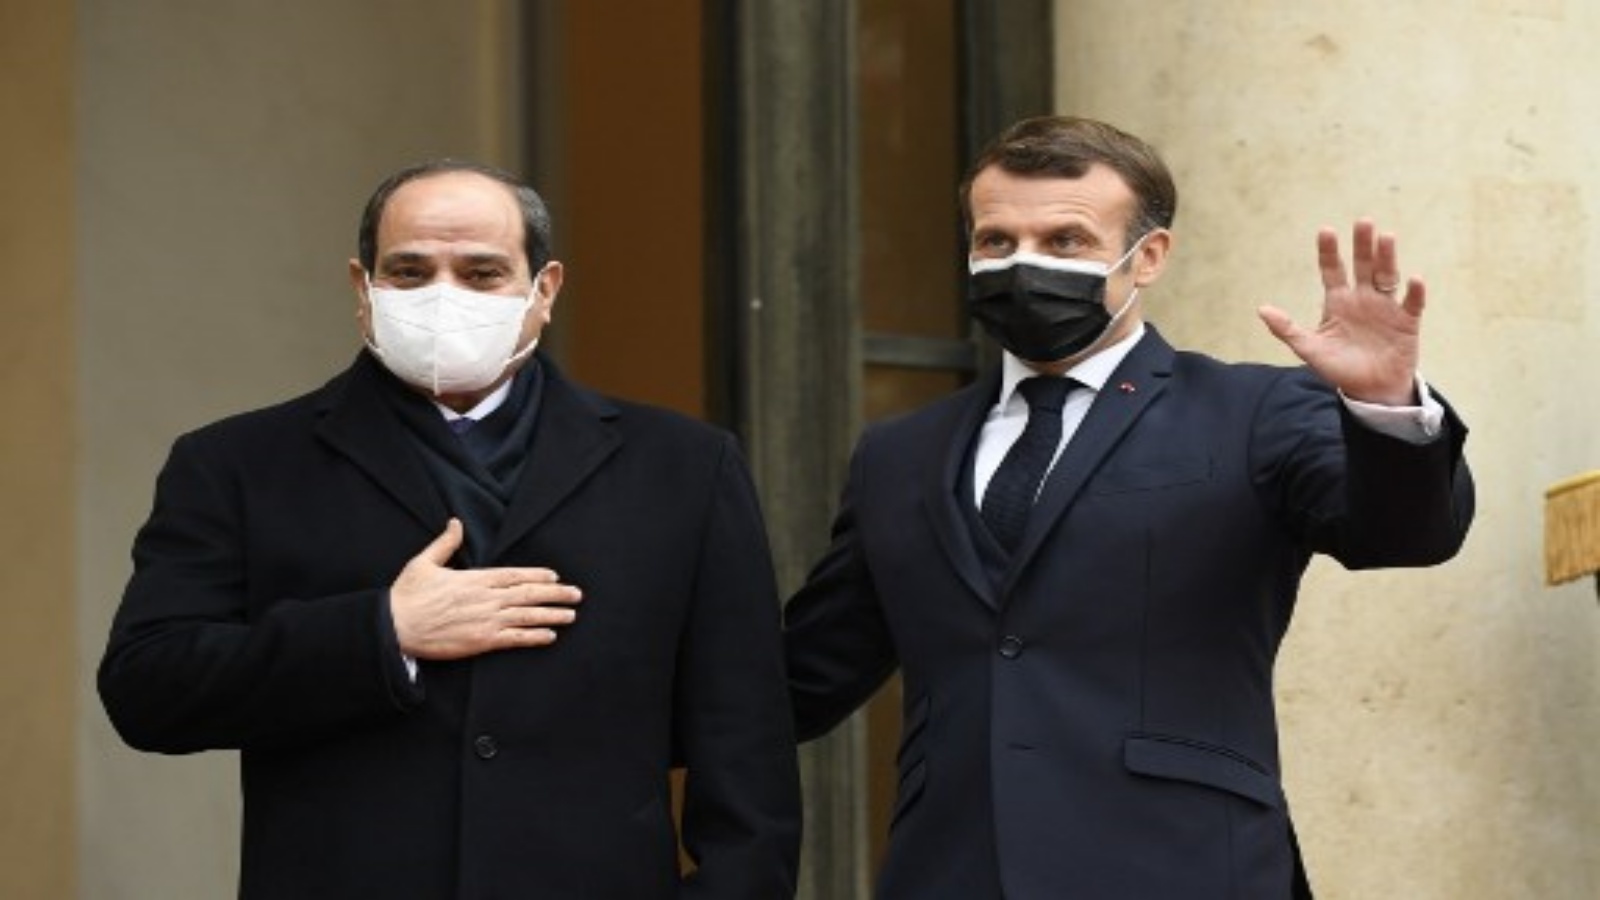 الرئيس الفرنسي إيمانويل ماكرون يرحب بنظيره المصري عبد الفتاح السيسي في قصر الإليزيه الرئاسي في 7 ديسمبر 2020 في باريس ،